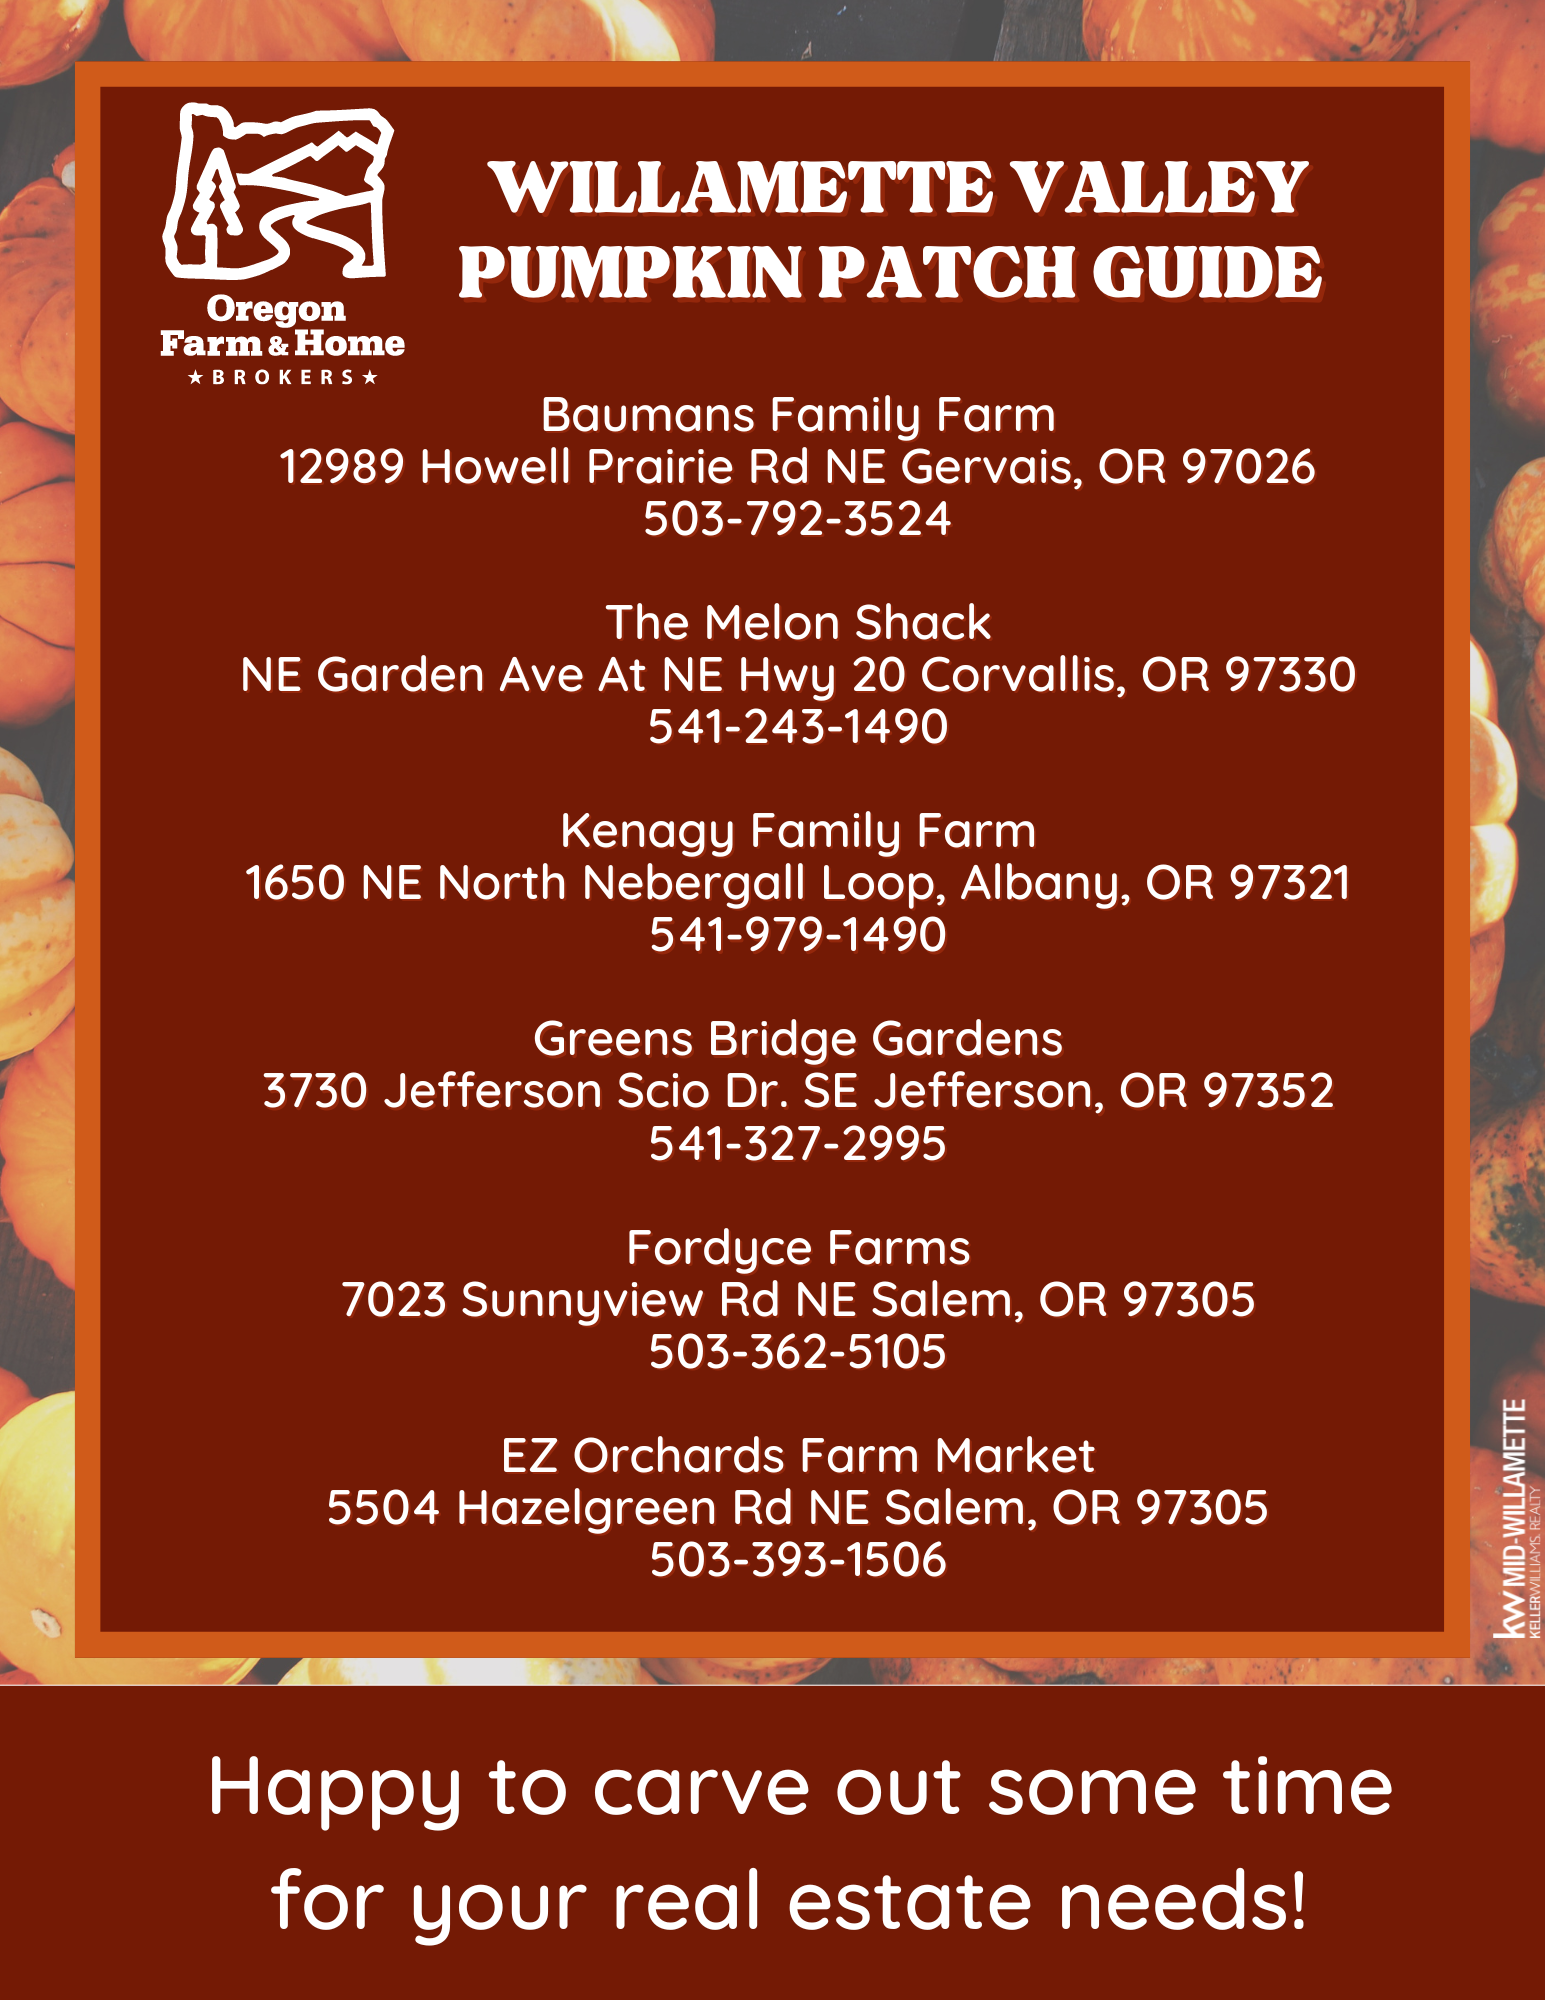 Brandi Pumpkin Patch Guide.png